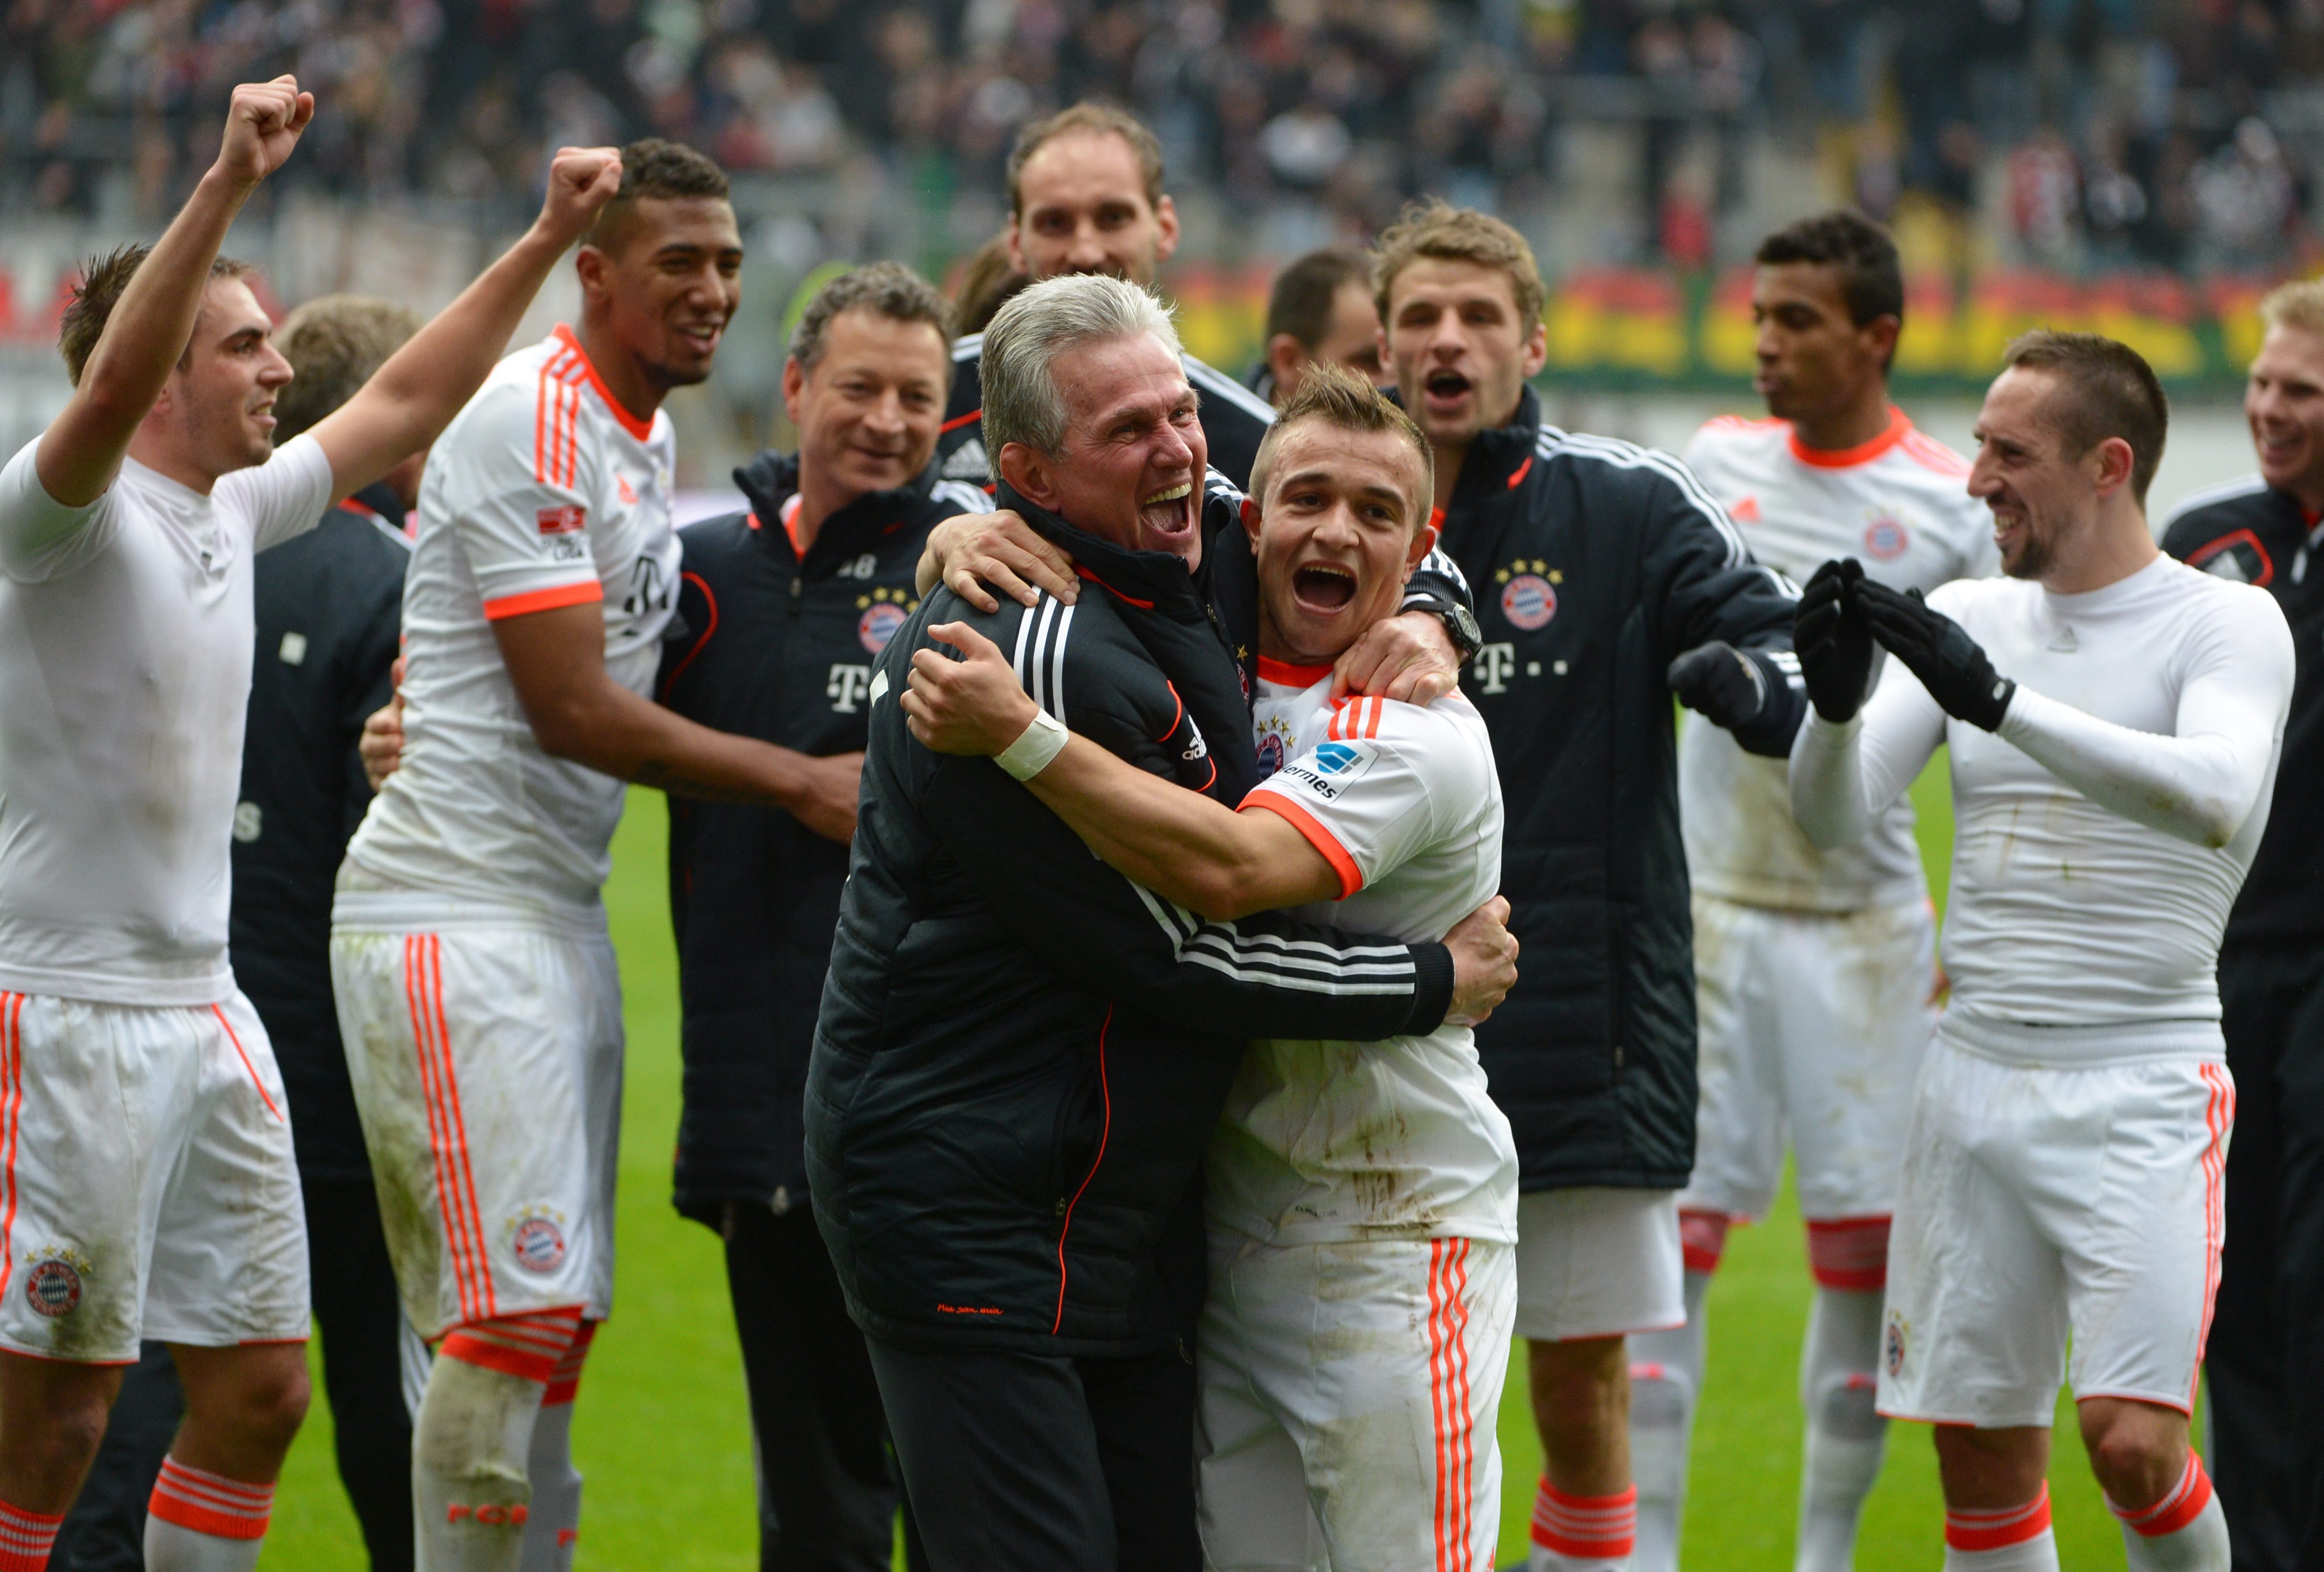 Bayern Munich has become the first team to clinch a major European league title this season. Photo: EPA